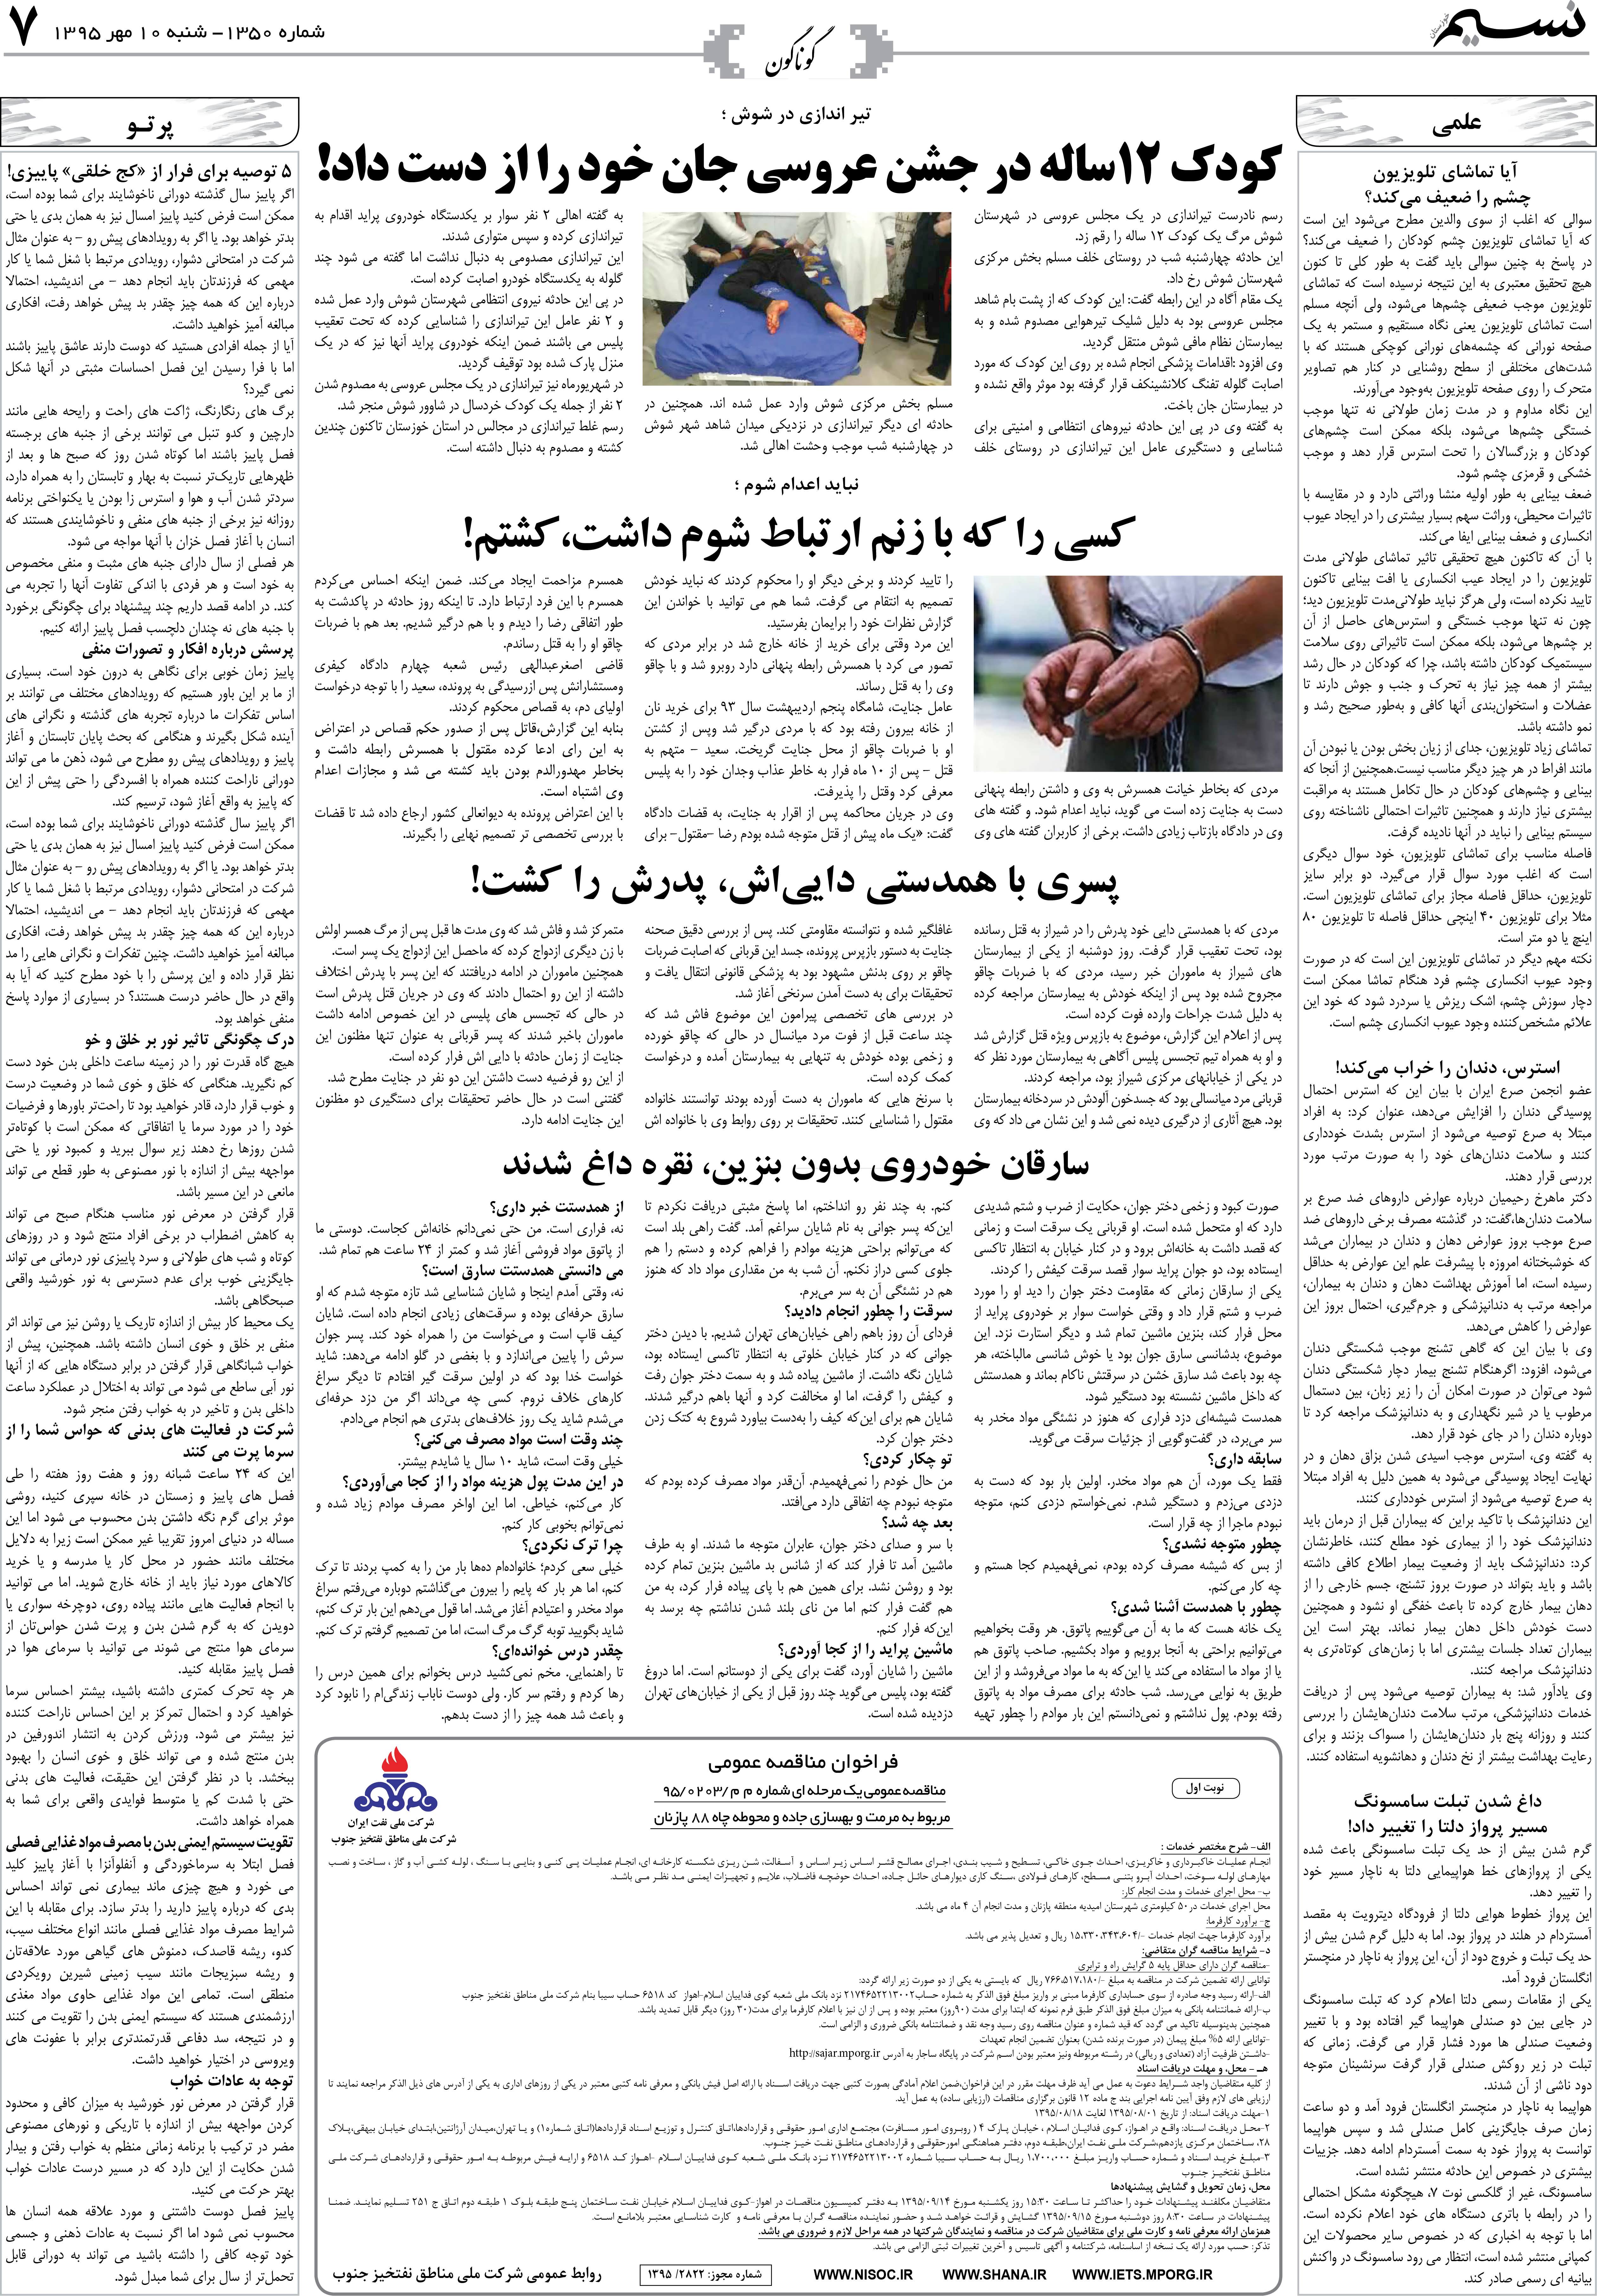 صفحه گوناگون روزنامه نسیم شماره 1350